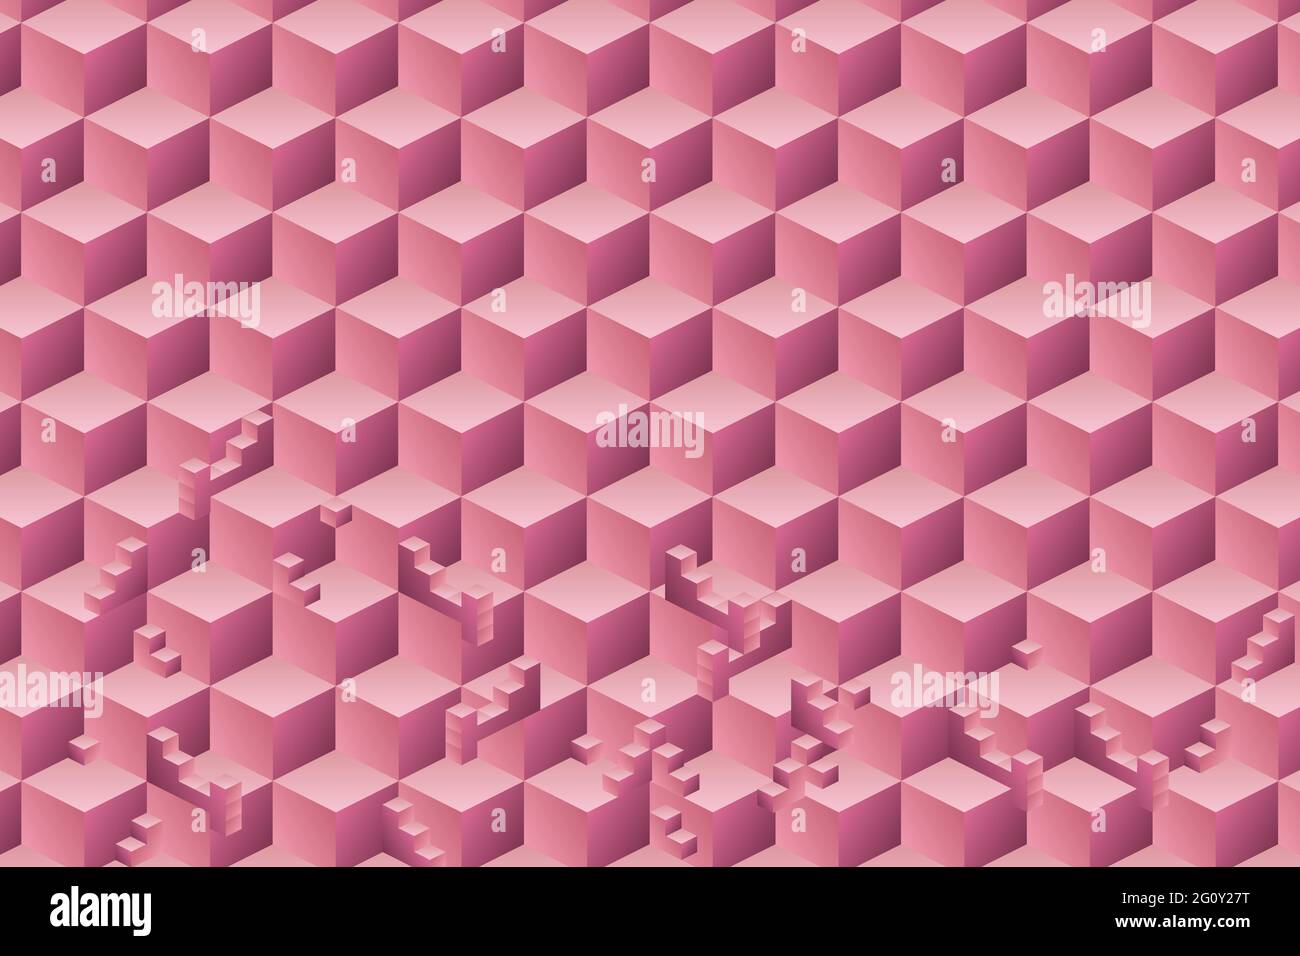 Abstraktes geometrisches Muster mit quadratischer Form 3d Würfel rosa Farbe Hintergrund. Vektorgrafik.EPS10 Stock Vektor